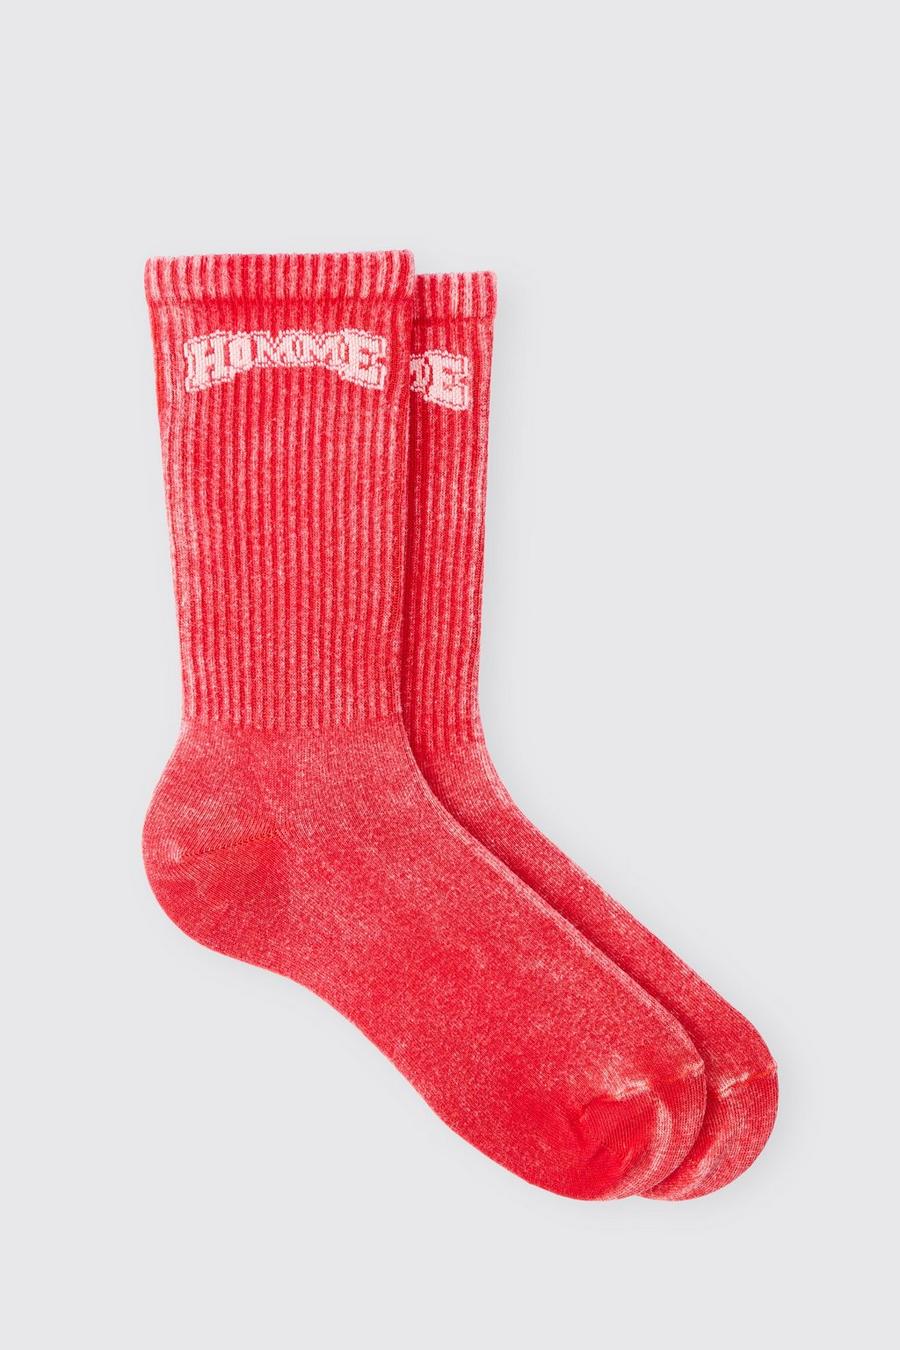 Acid Wash Homme Socks In Red